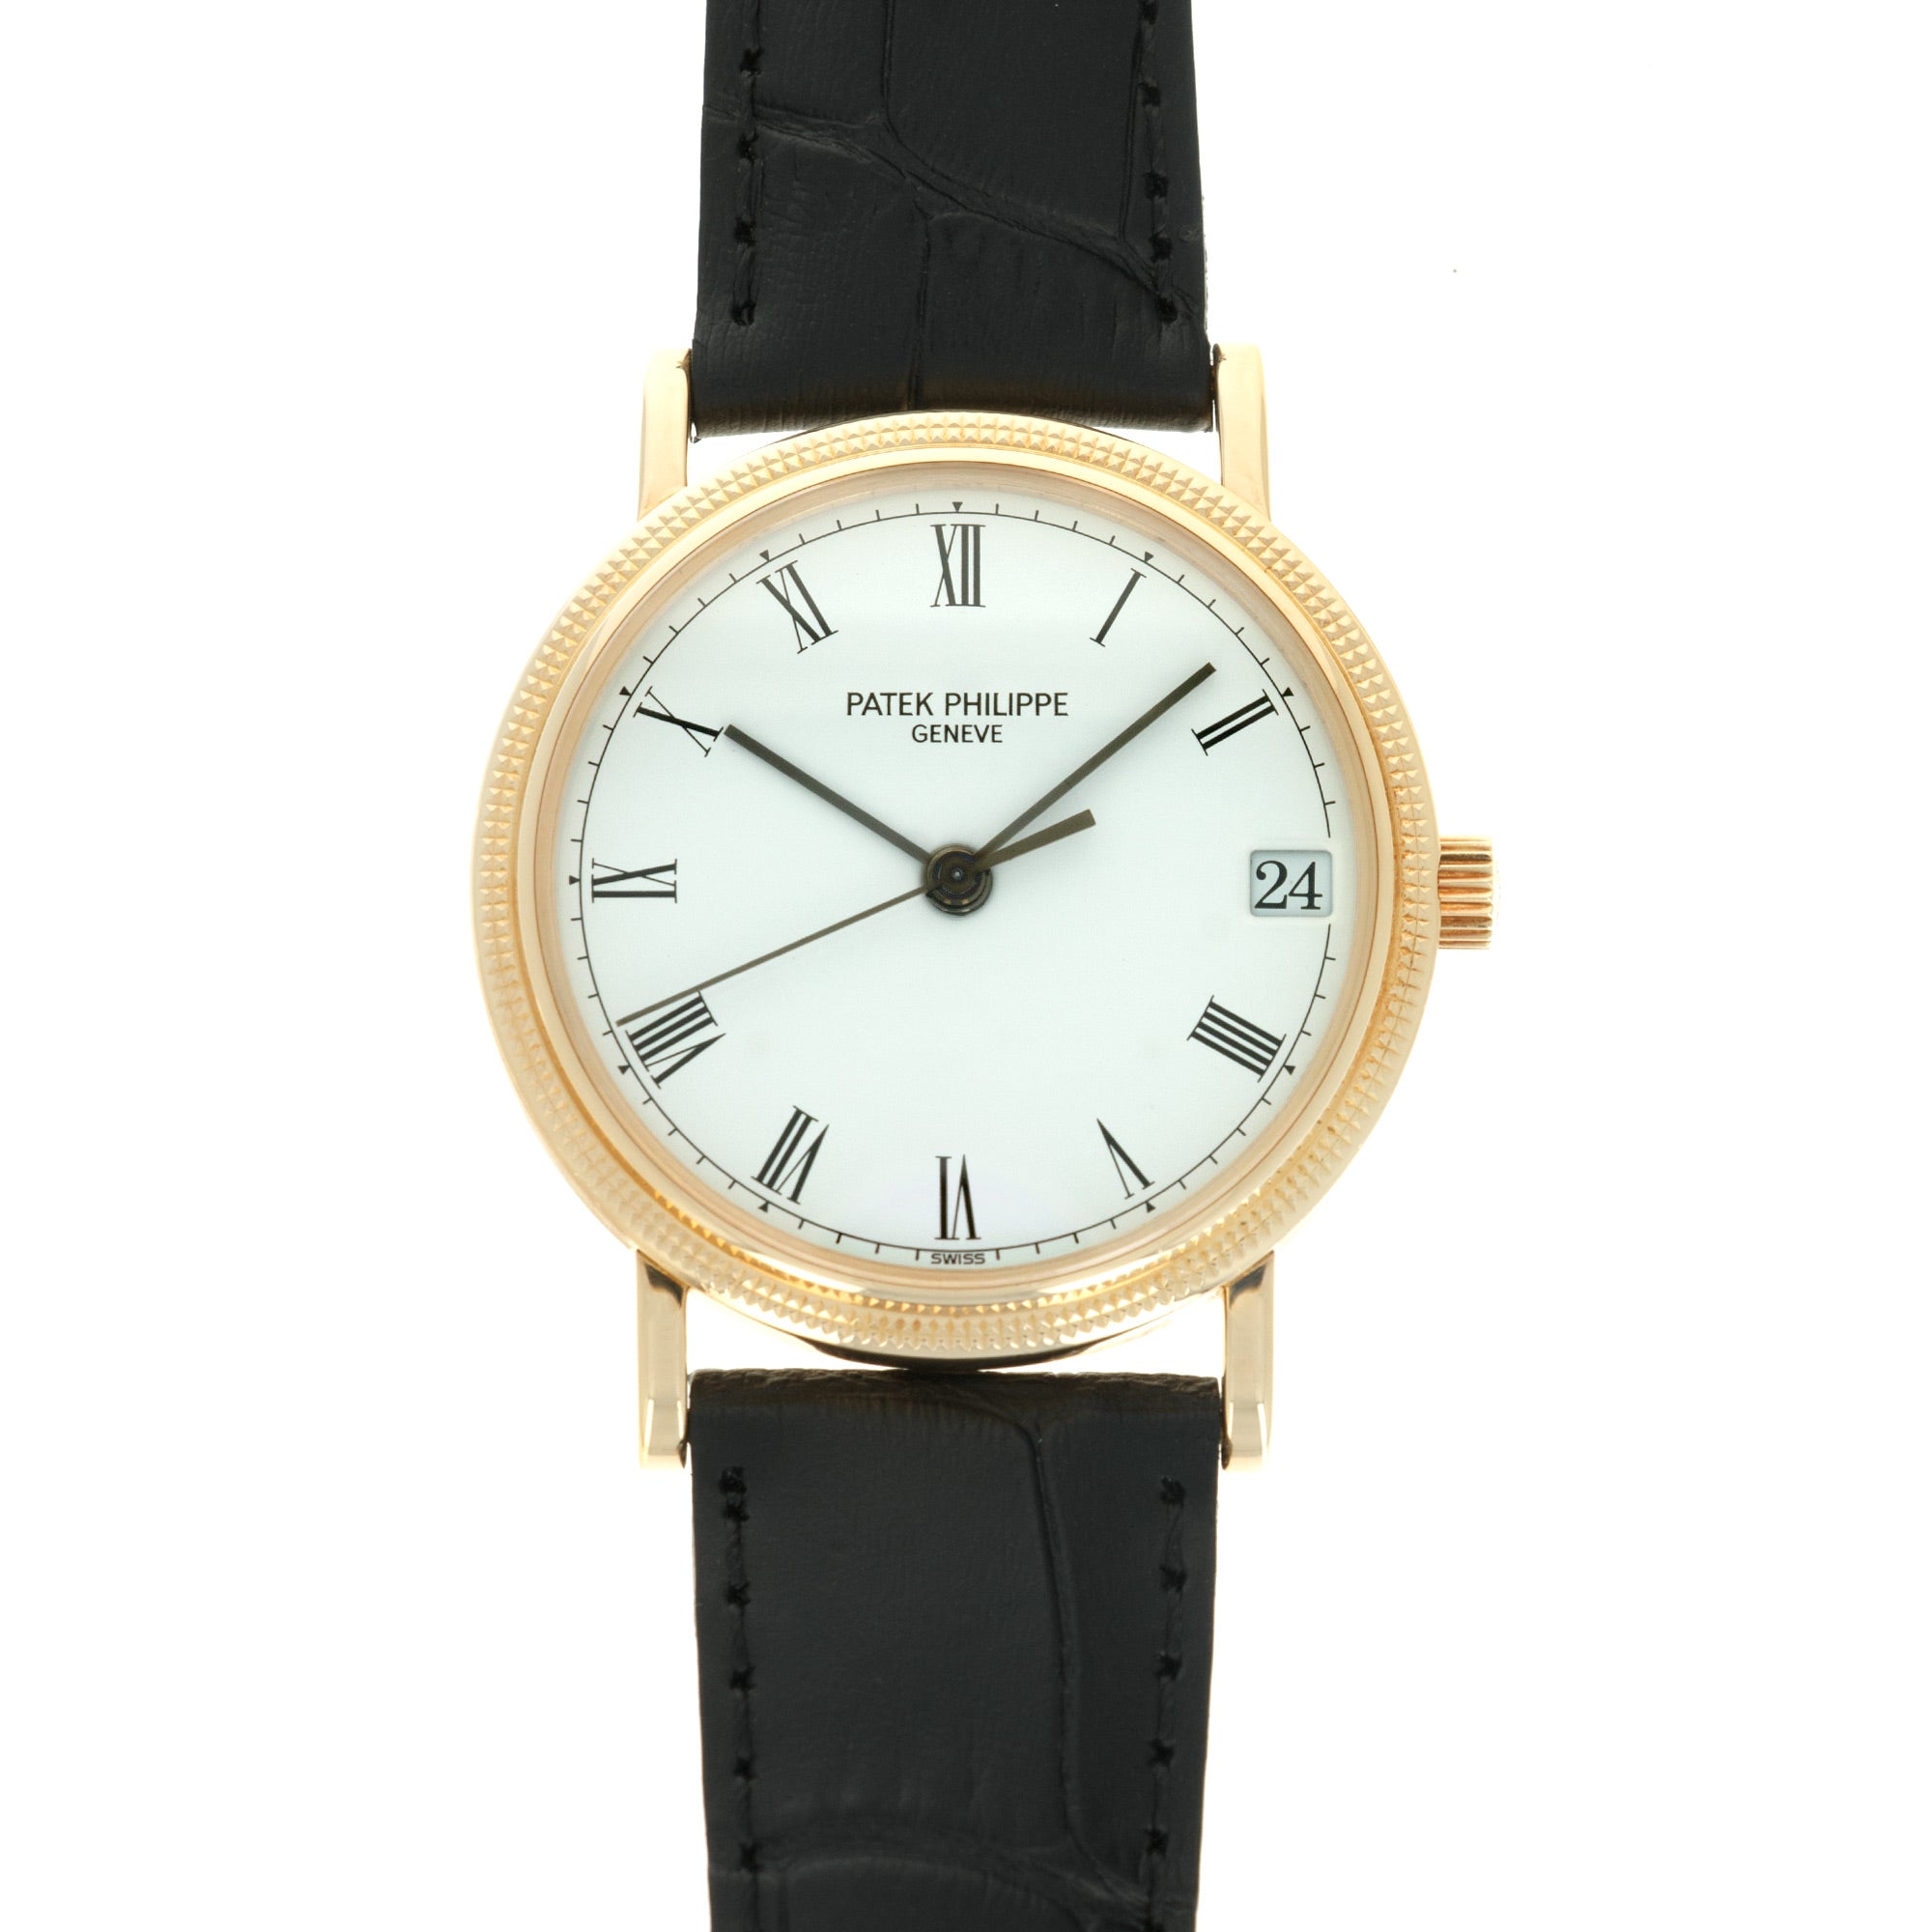 Patek Philippe - Patek Philippe Yellow Gold Calatrava Watch Ref. 3802 - The Keystone Watches